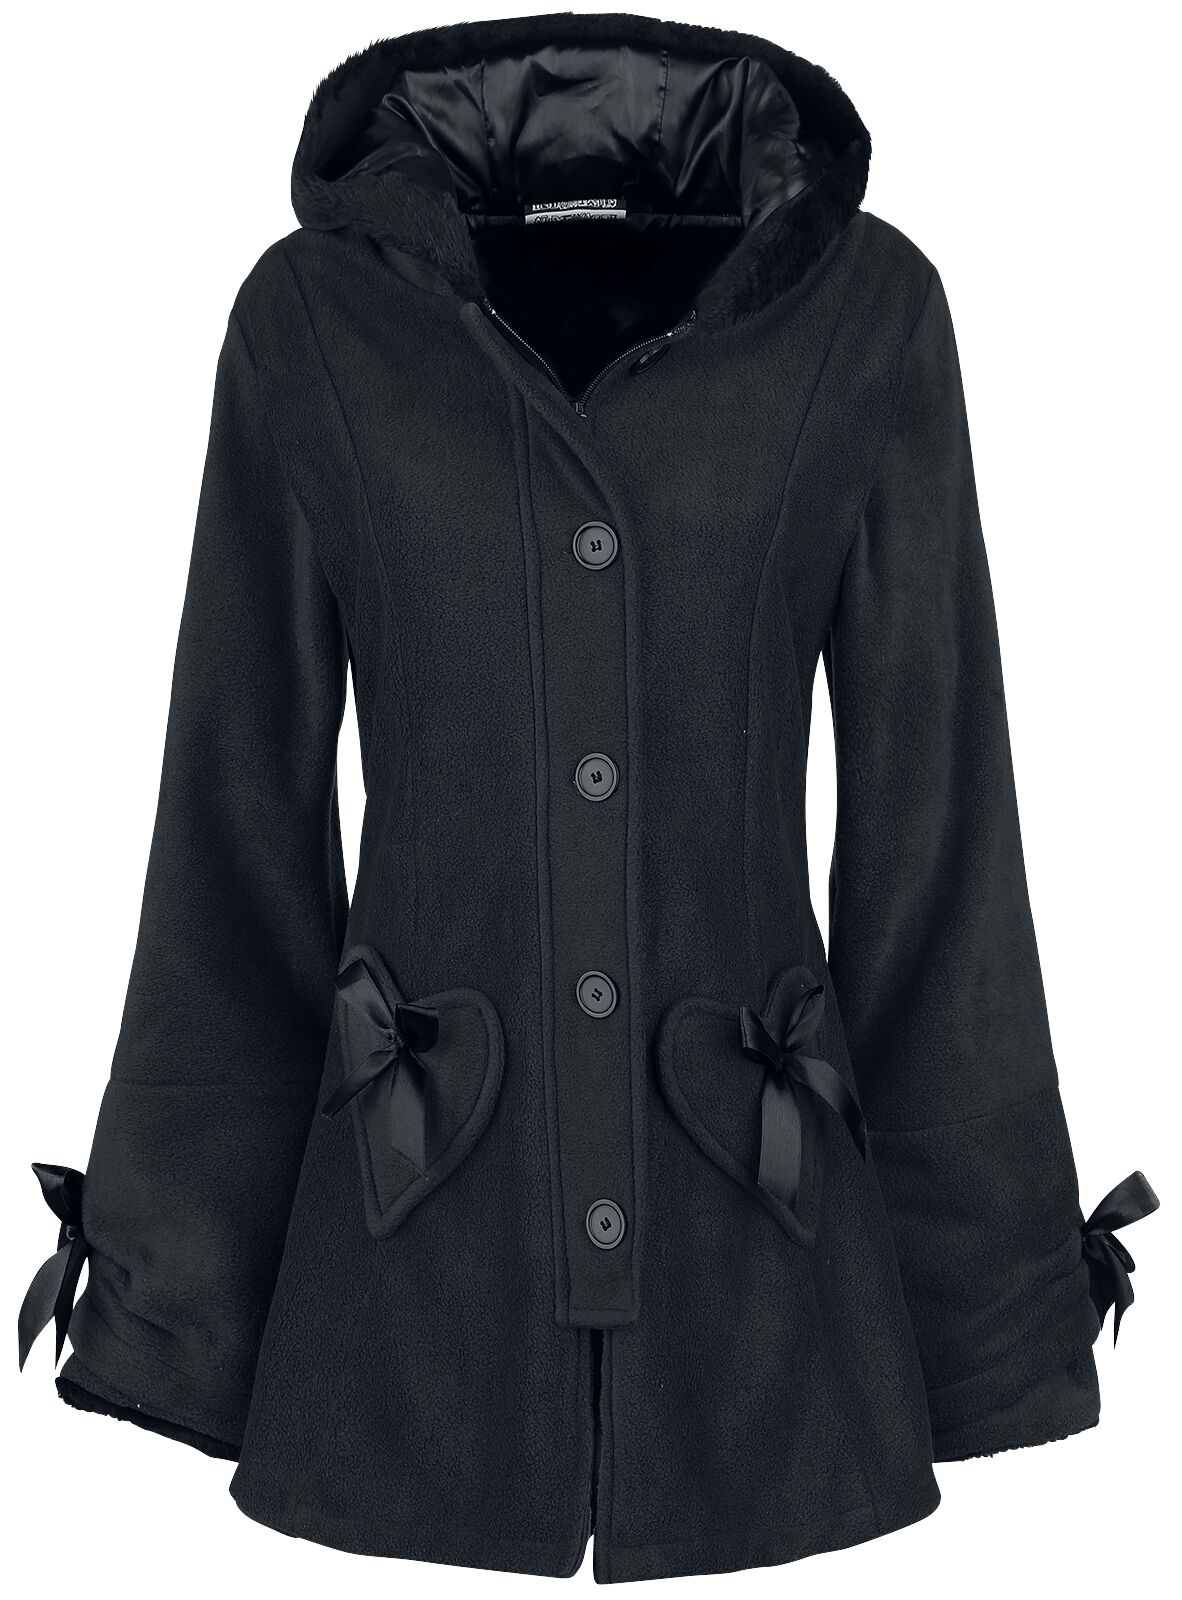 Manteau court de Poizen Industries - Manteau Alison - XS à 5XL - pour Femme - noir